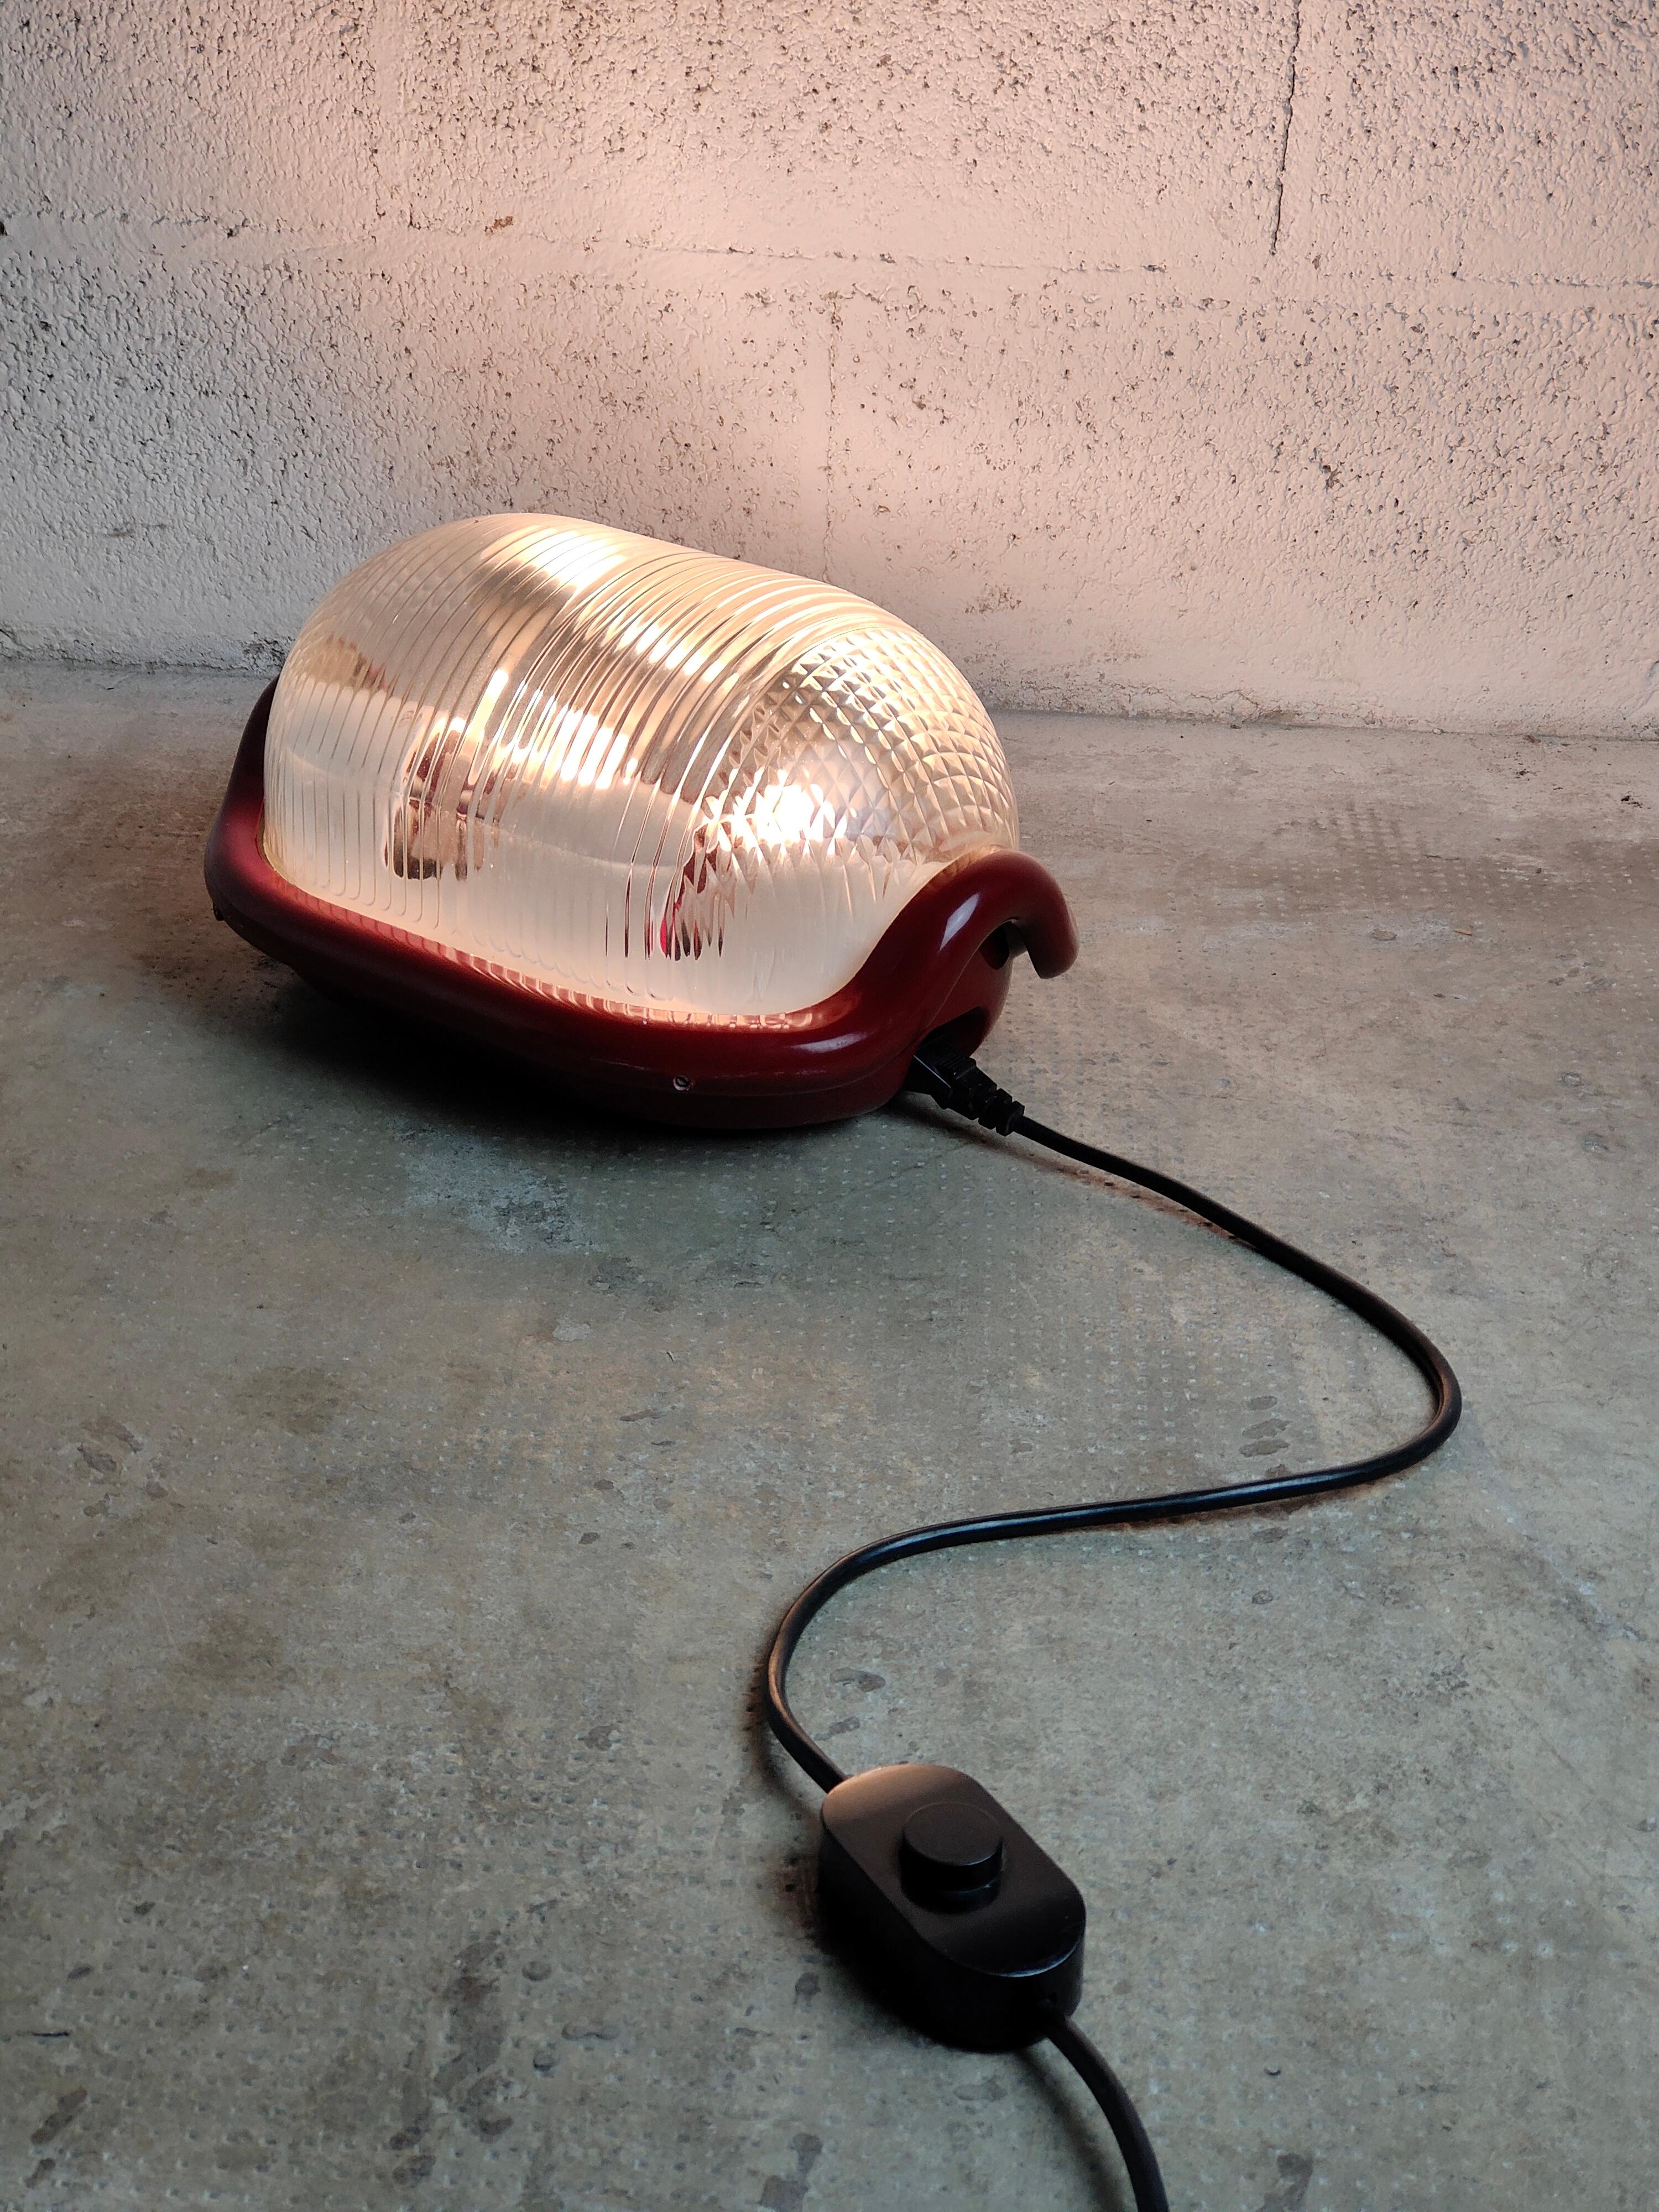 Lampadaire iconique Noce T conçu par Achille Castiglioni et produit par Flos dans les années 1970.
Il doit son nom à sa forme arrondie qui évoque une demi-noix.
La structure est en aluminium épais moulé sous pression, le diffuseur est en verre